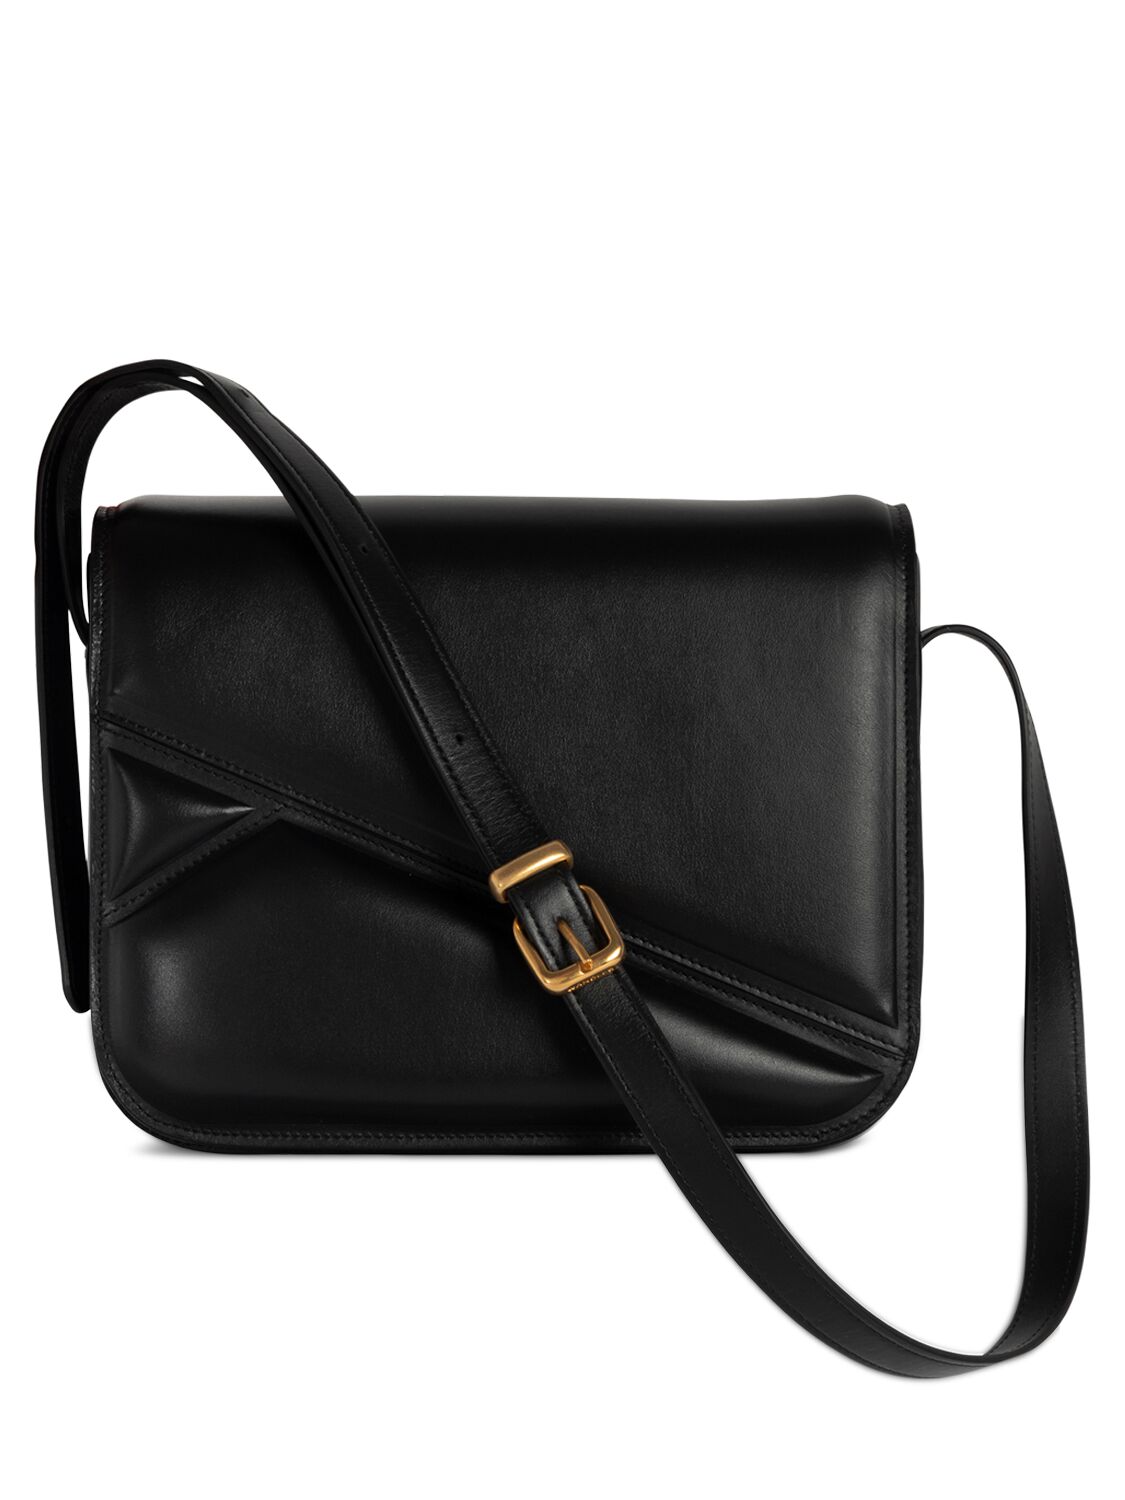 Wandler Medium Oscar Trunk Leather Shoulder Bag In Black